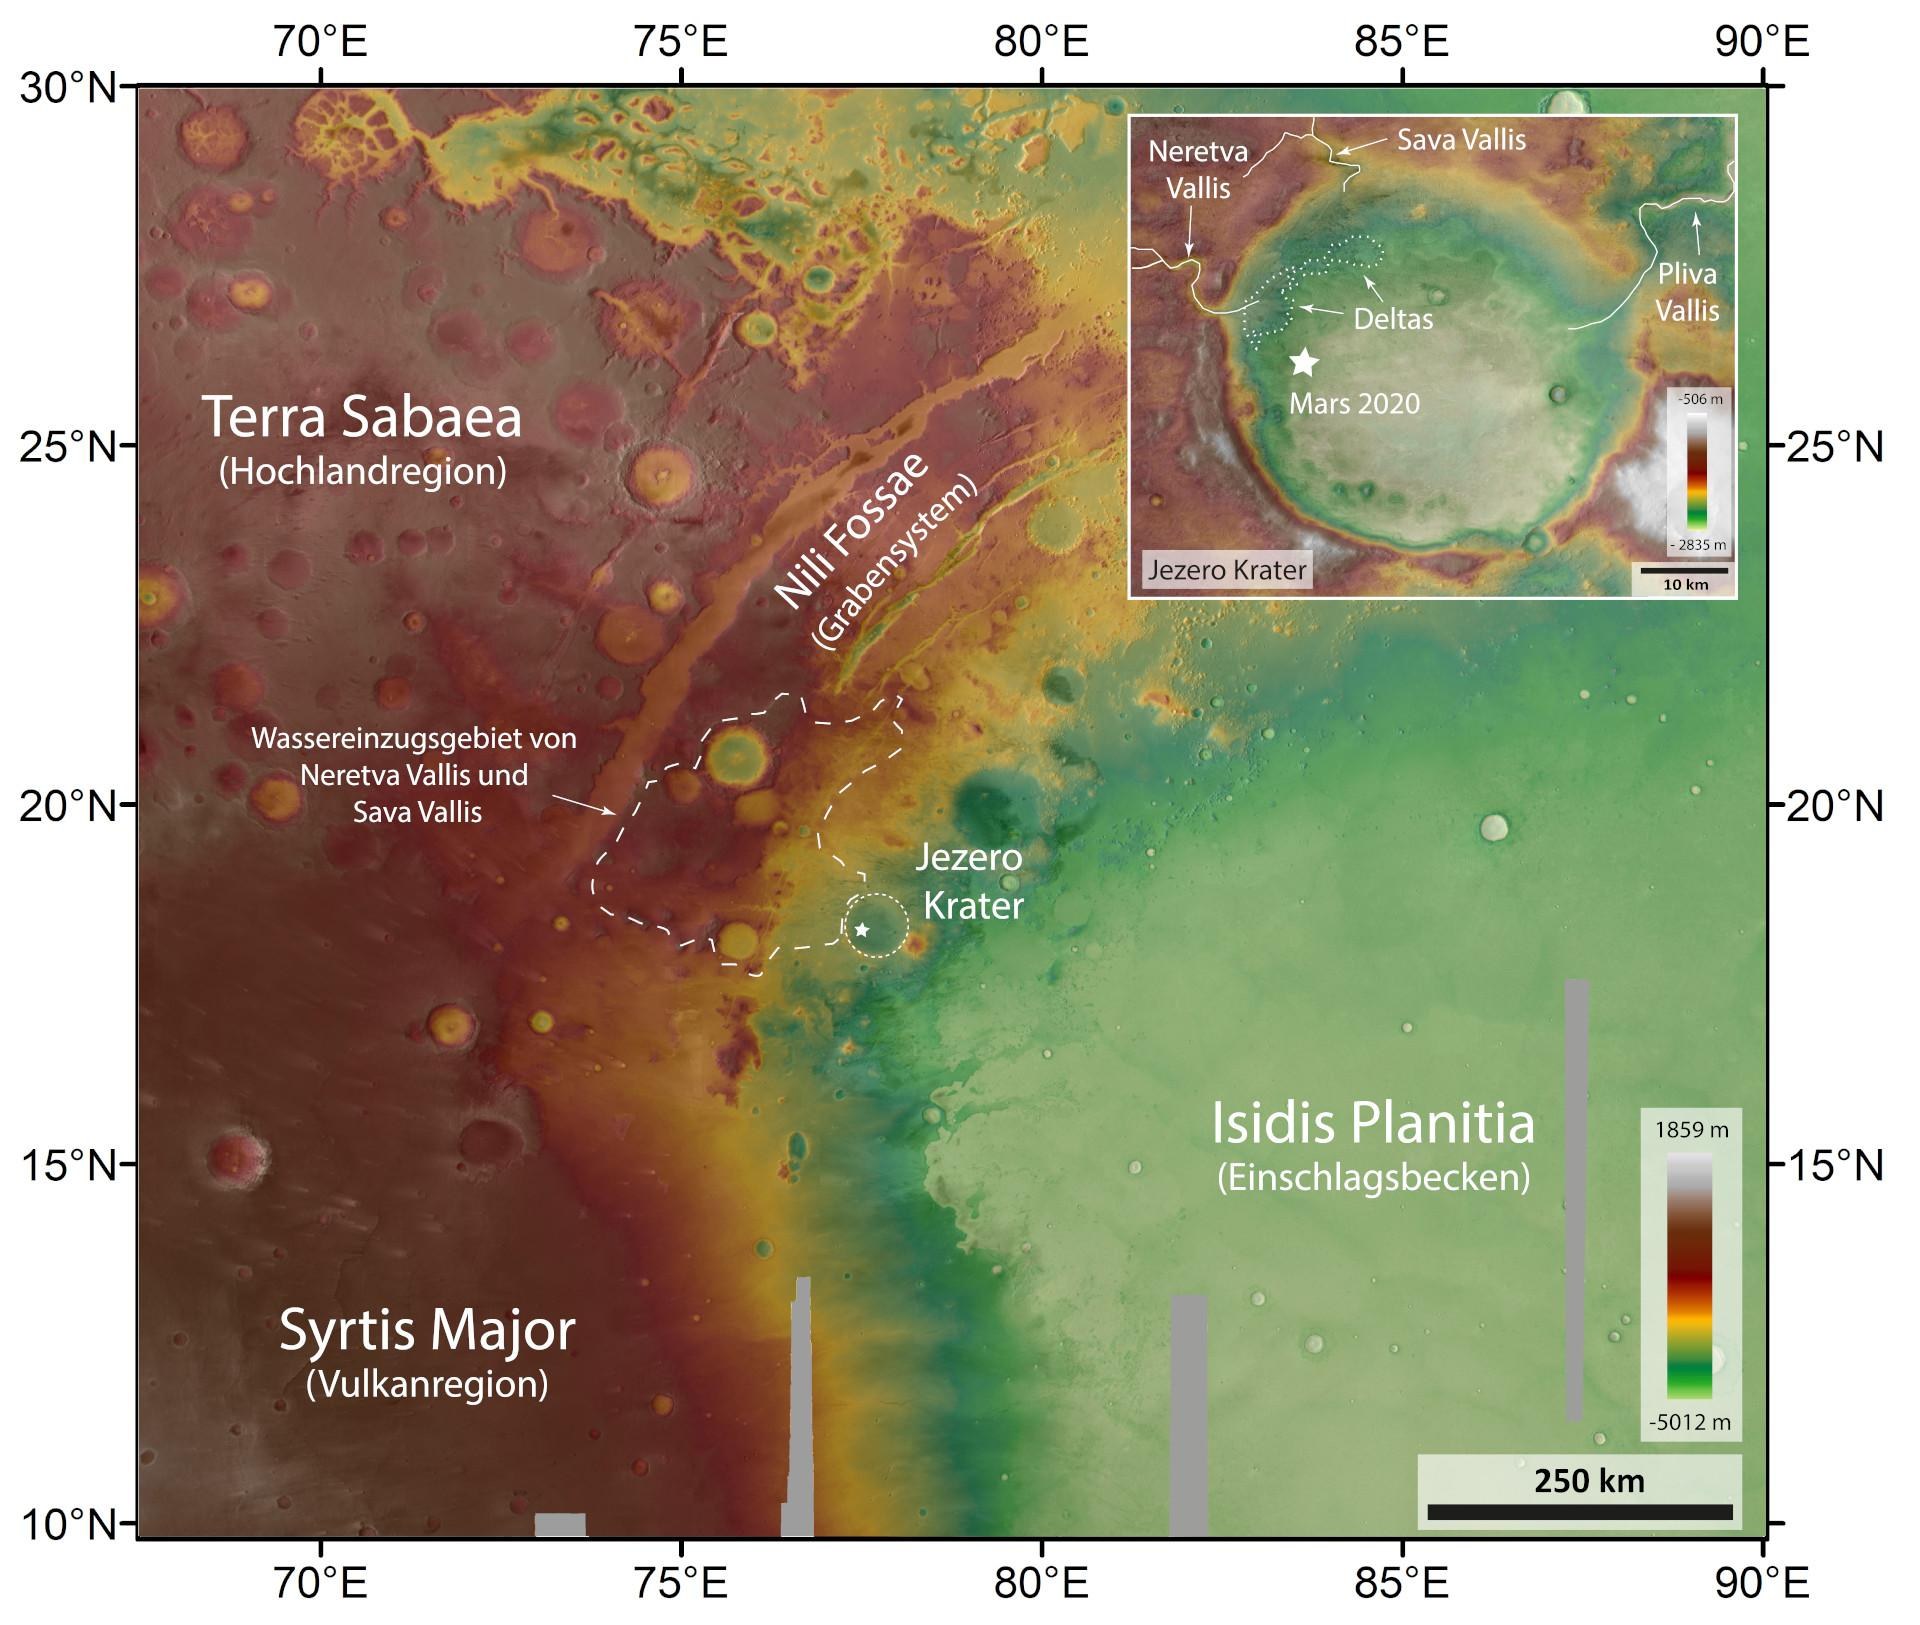 Topographische Bildkarte der Umgebung des Kraters Jezero